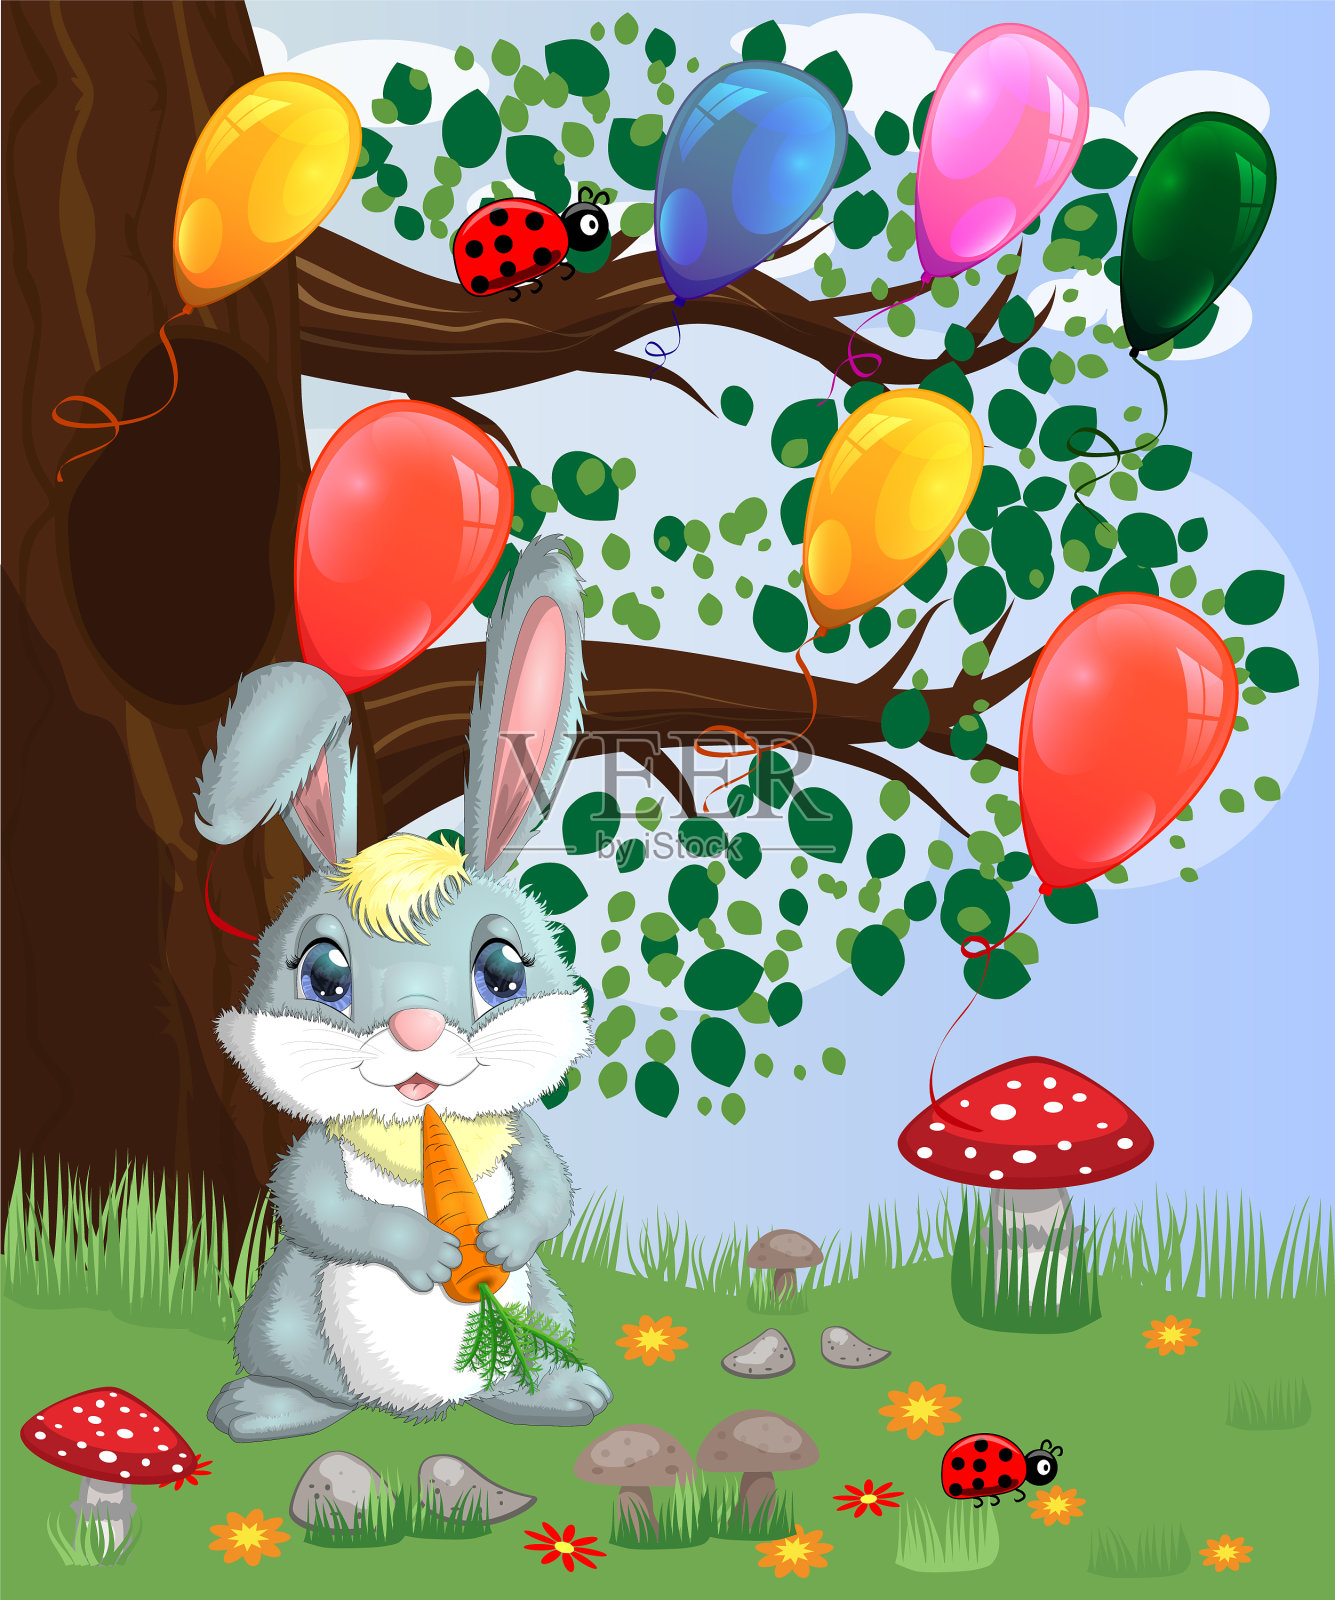 小兔子和胡萝卜在林间空地的春天插画图片素材